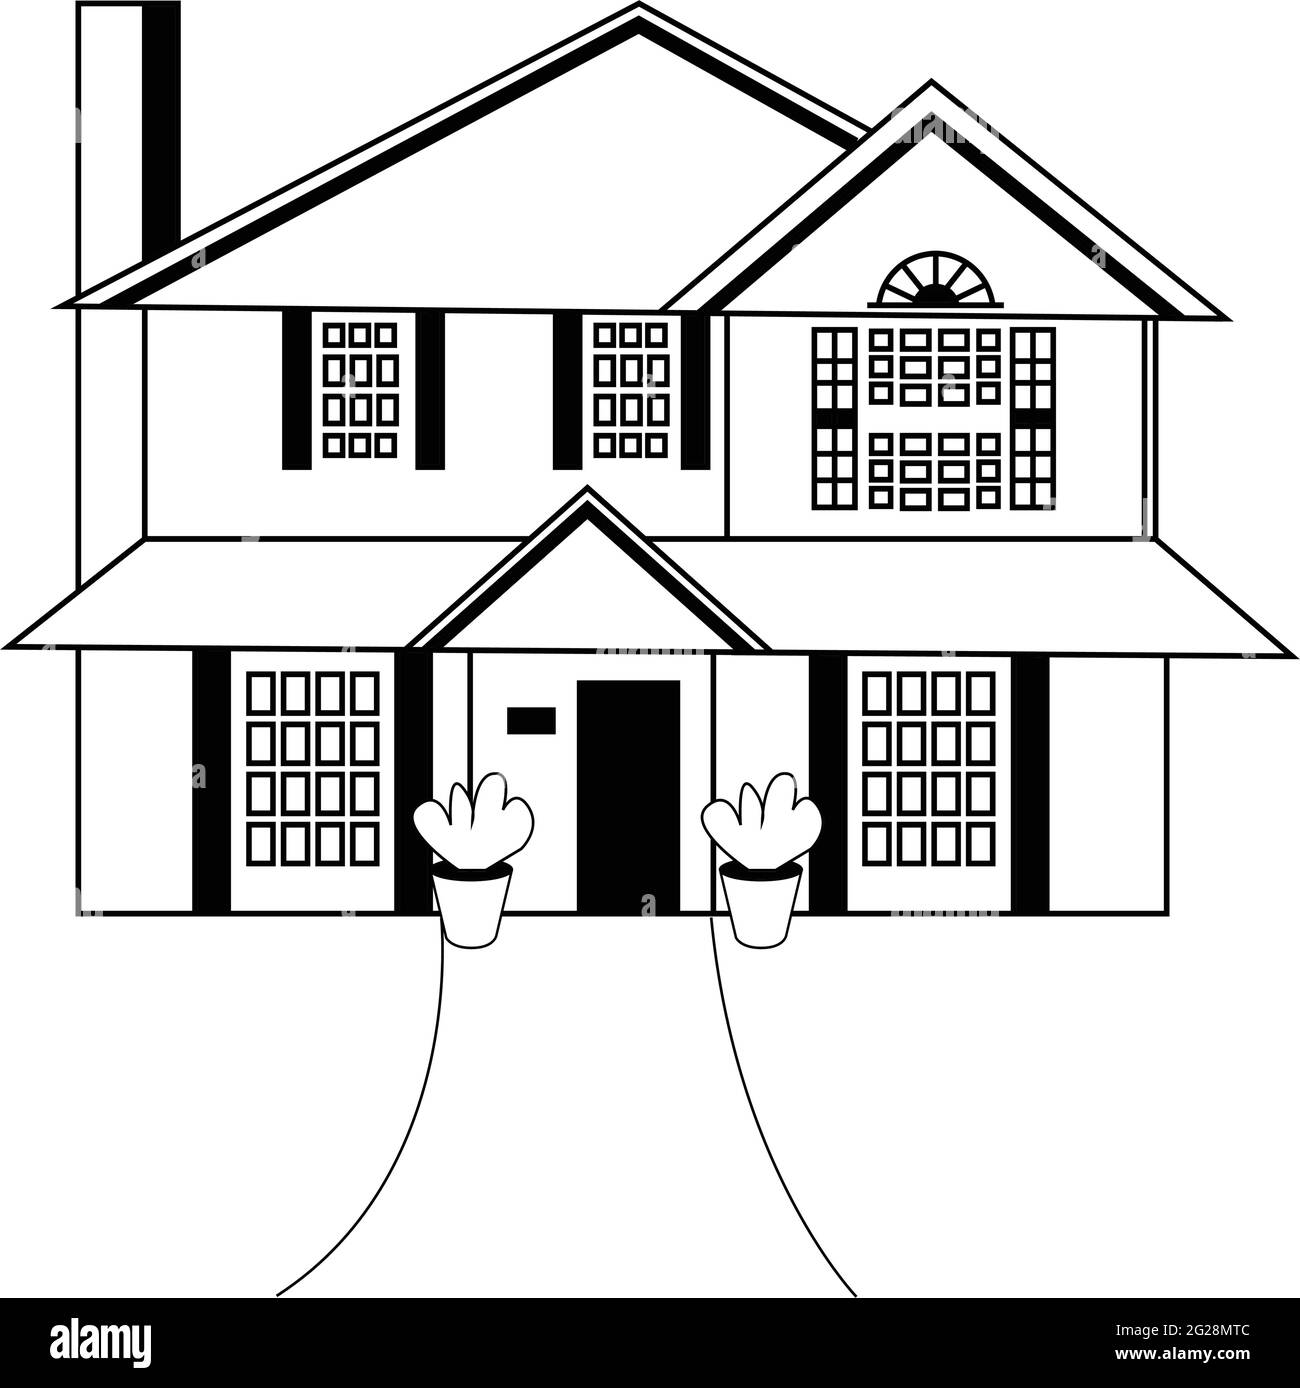 Disegno dell'architettura della casa. Un disegno a mano di una tipica casa di campagna. Schizzo in bianco e nero. Facciata. Illustrazione vettoriale. Legno Illustrazione Vettoriale